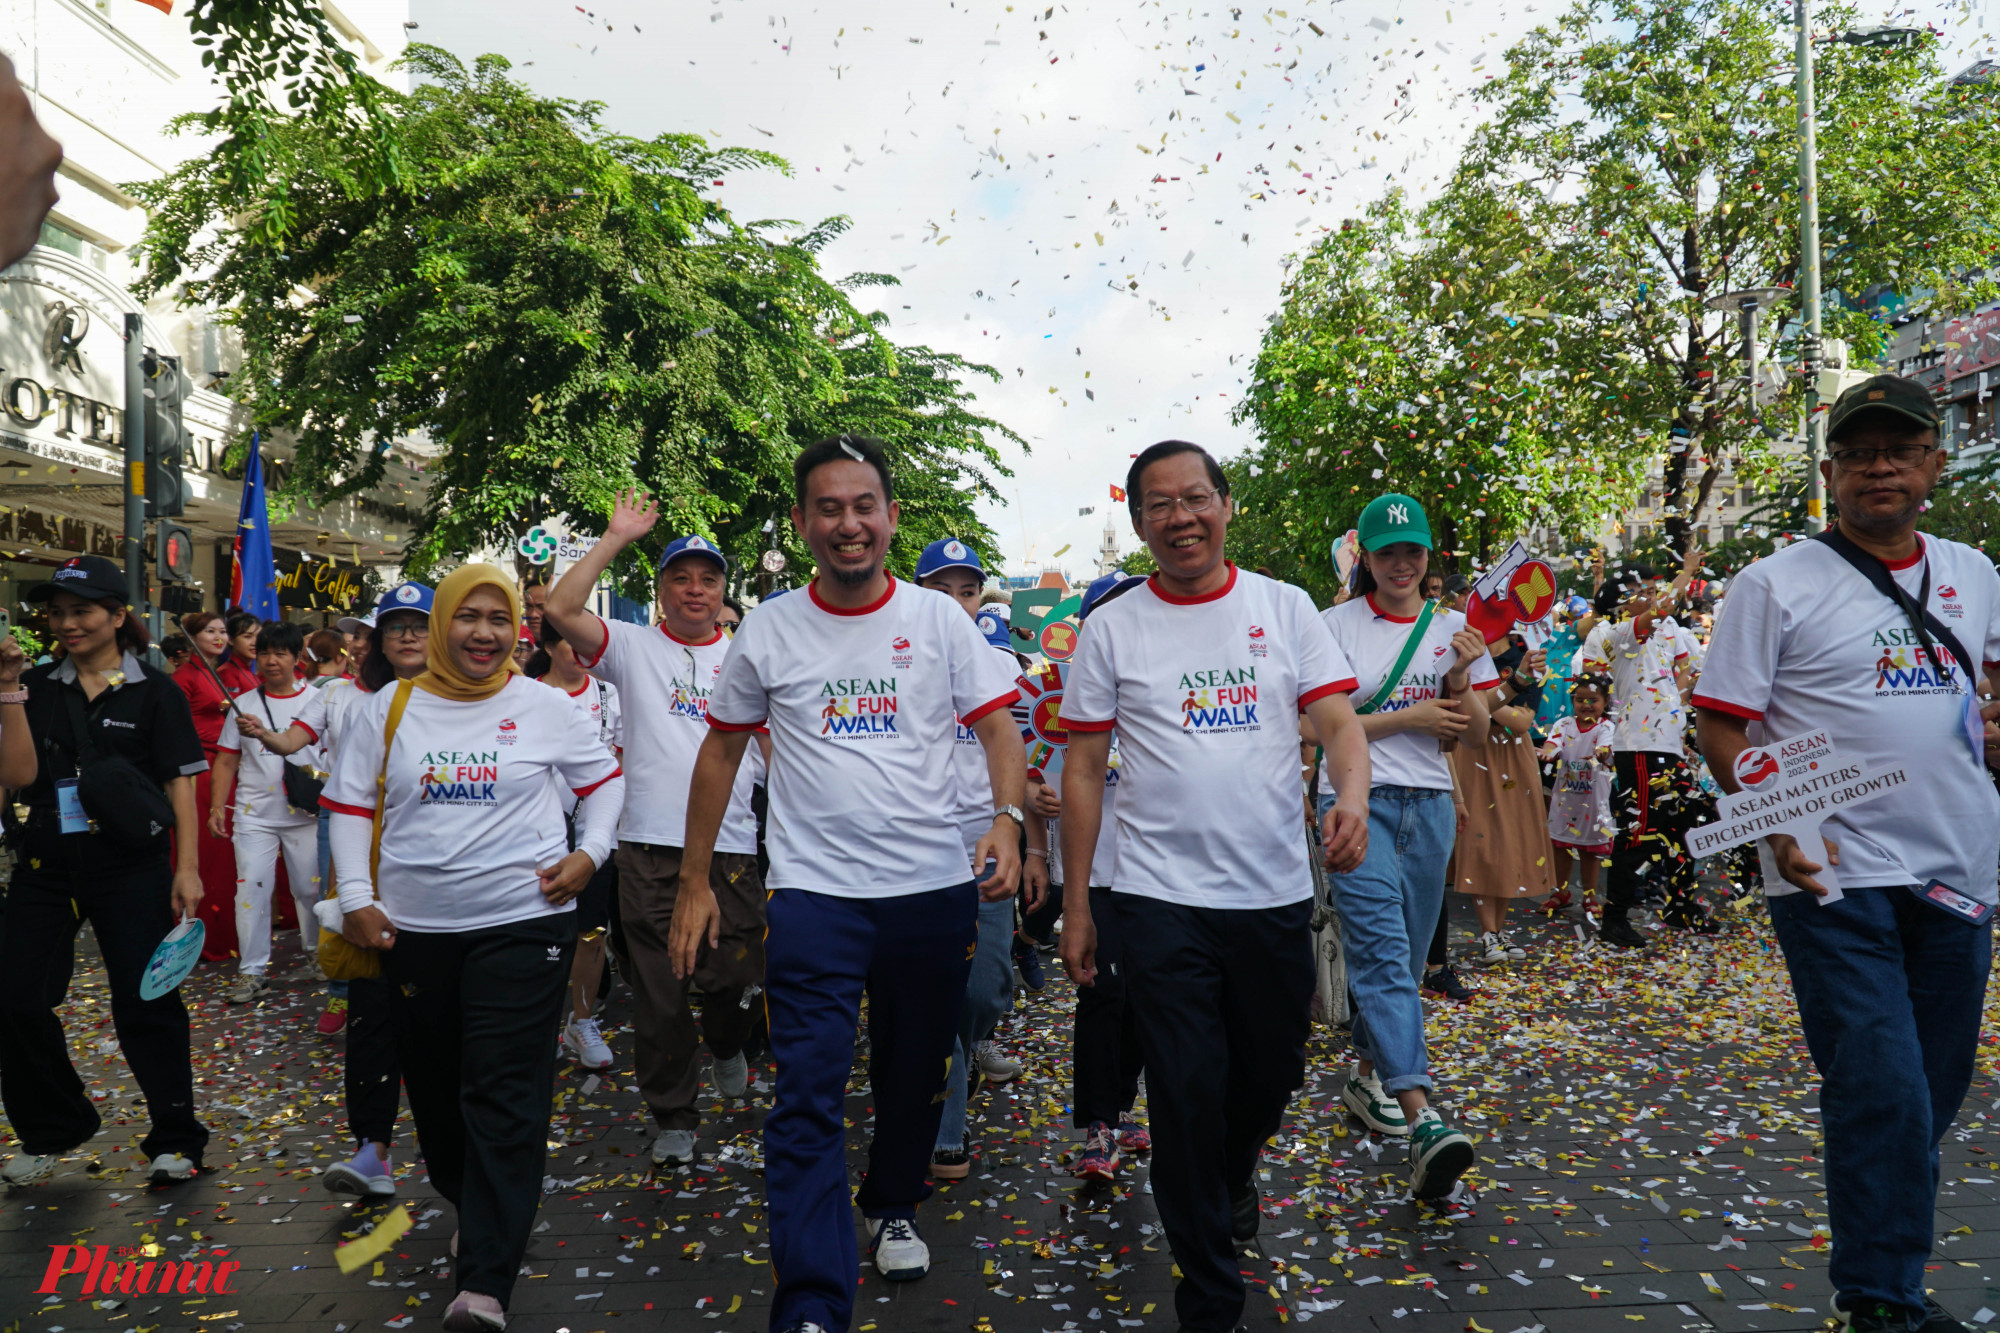 Hoạt động đi bộ Ngày ASEAN tại TPHCM nhân kỷ niệm 56 năm ngày thành lập ASEAN (08/08/1967 – 08/08/2023) sẽ góp phần nâng cao nhận thức chung về tầm quan trọng của tinh thần đoàn kết hữu nghị, gắn bó dưới mái nhà chung ASEAN tại Việt Nam, đặc biệt tại TPHCM.